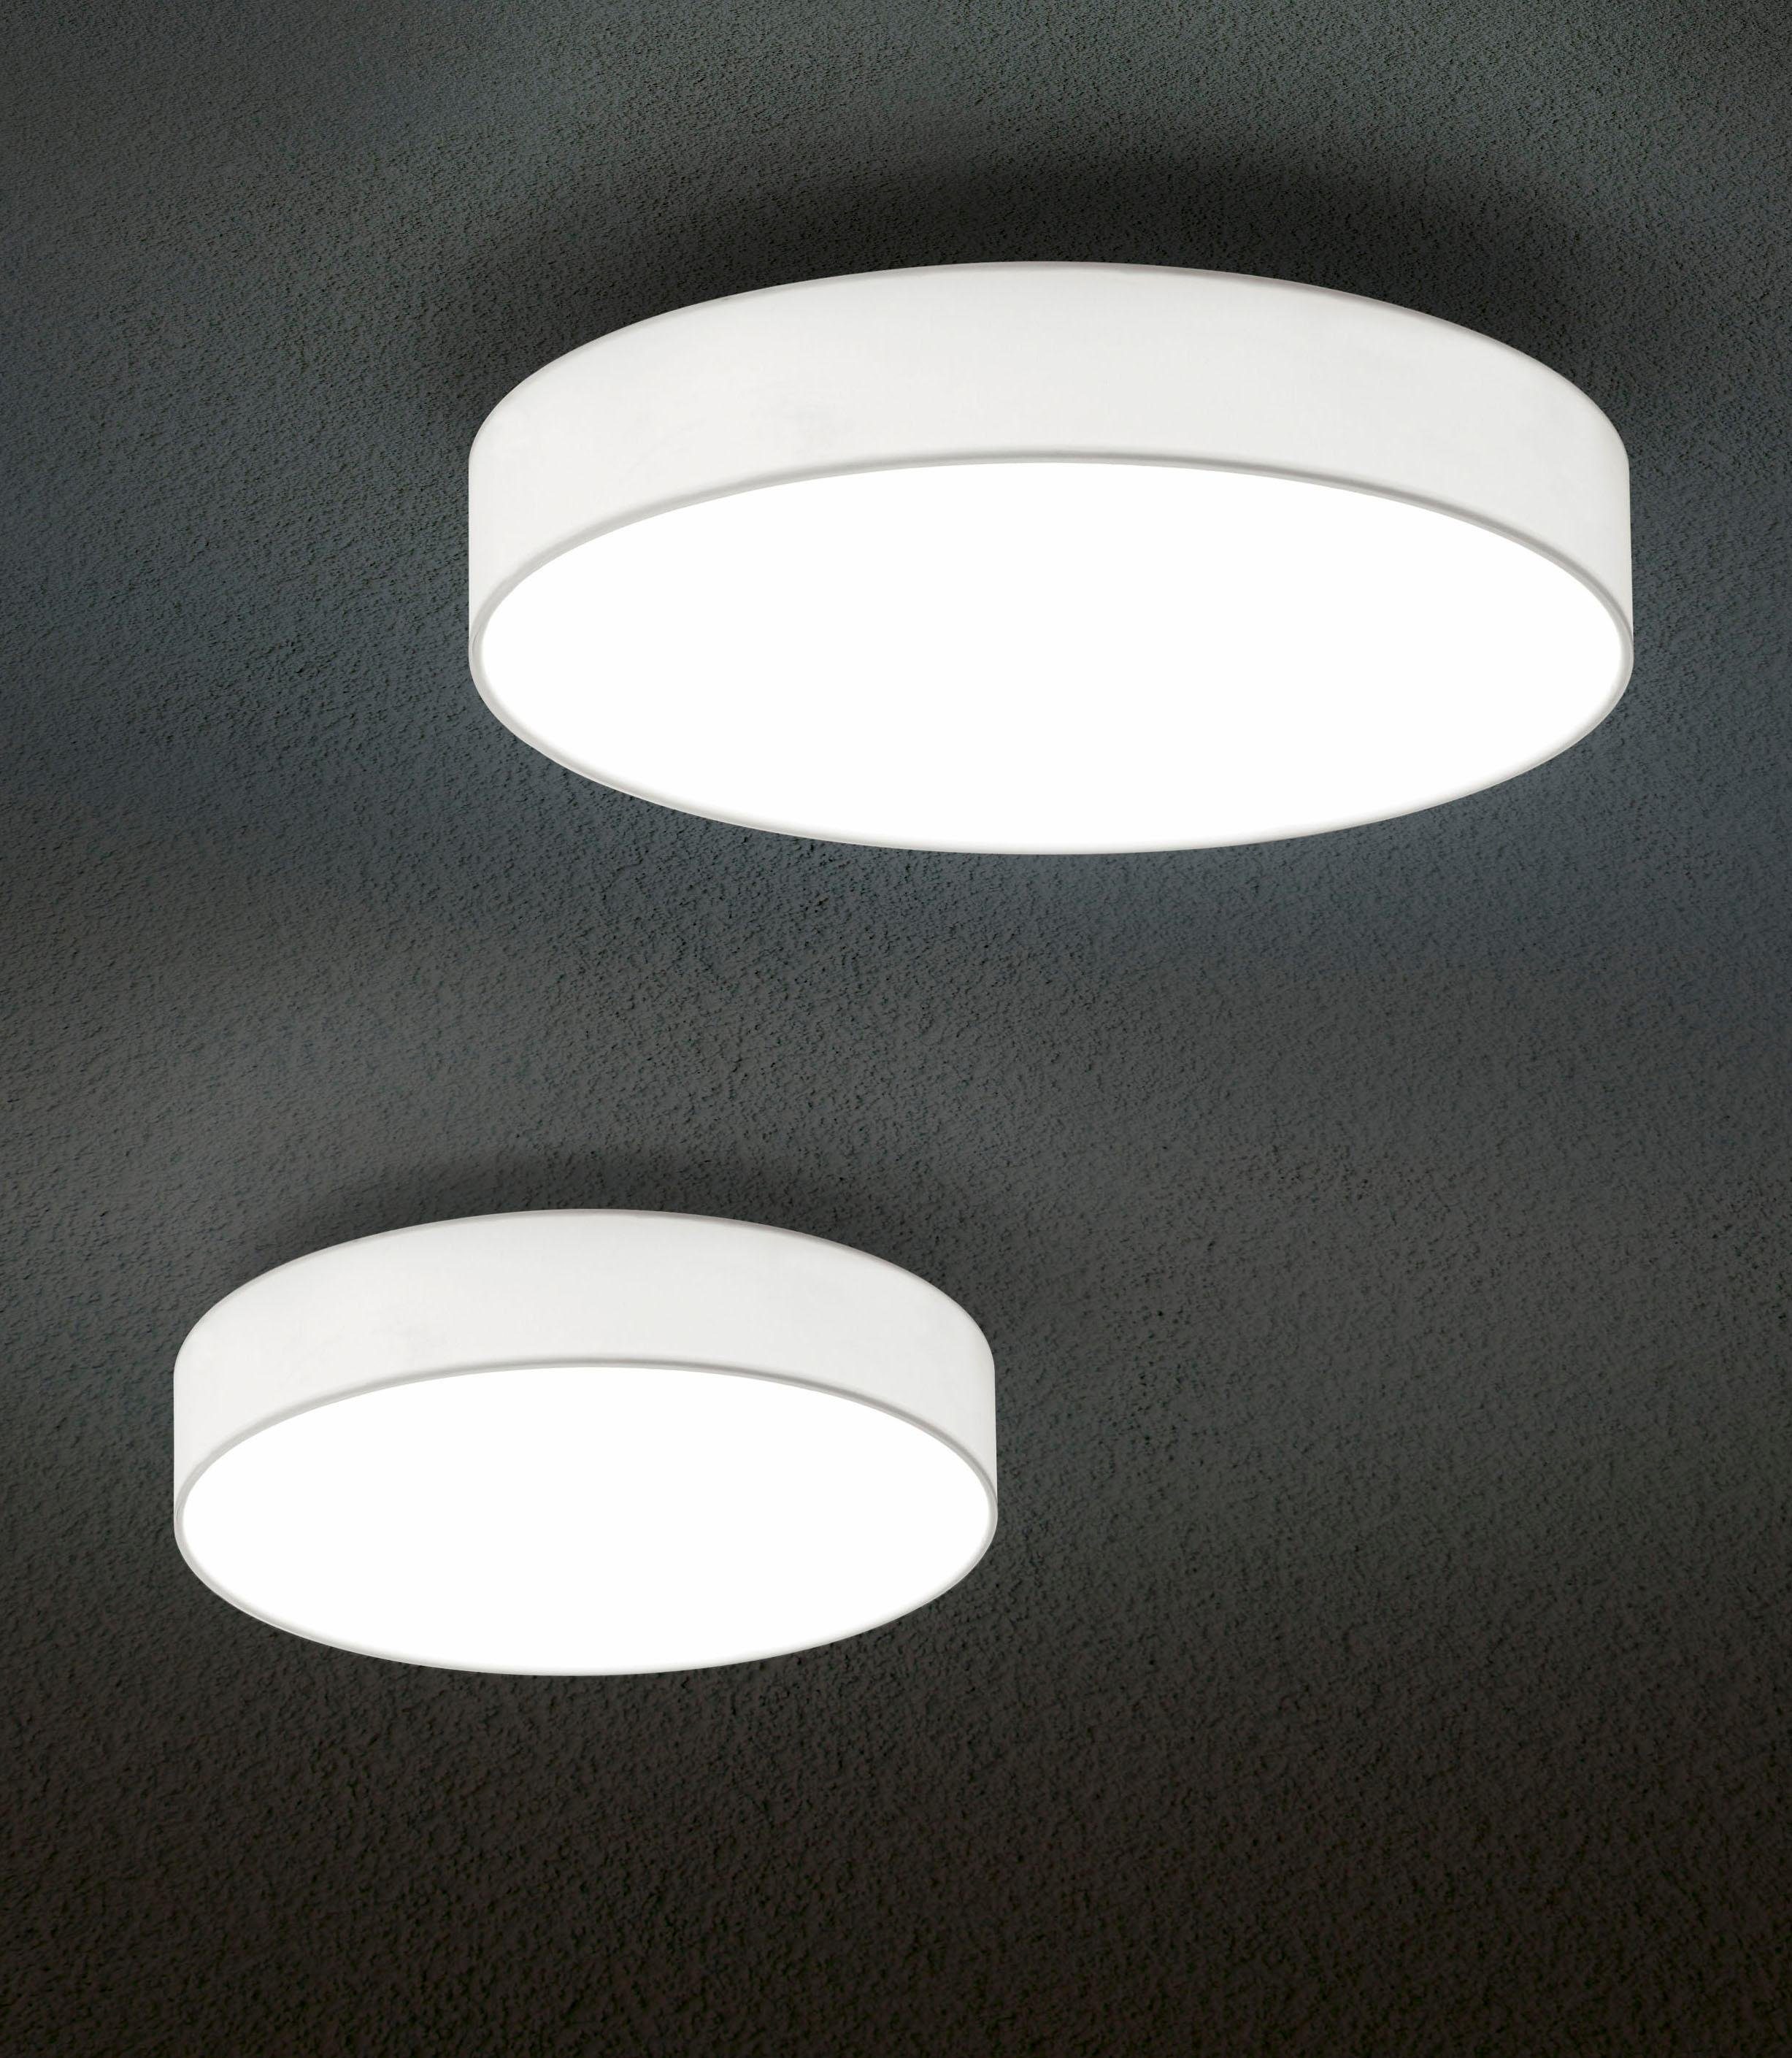 fest Deckenlampe, integriert, TRIO Switch LED LED Leuchten LUGANO, Warmweiß, Dimmer LED Deckenleuchte Dimmfunktion,